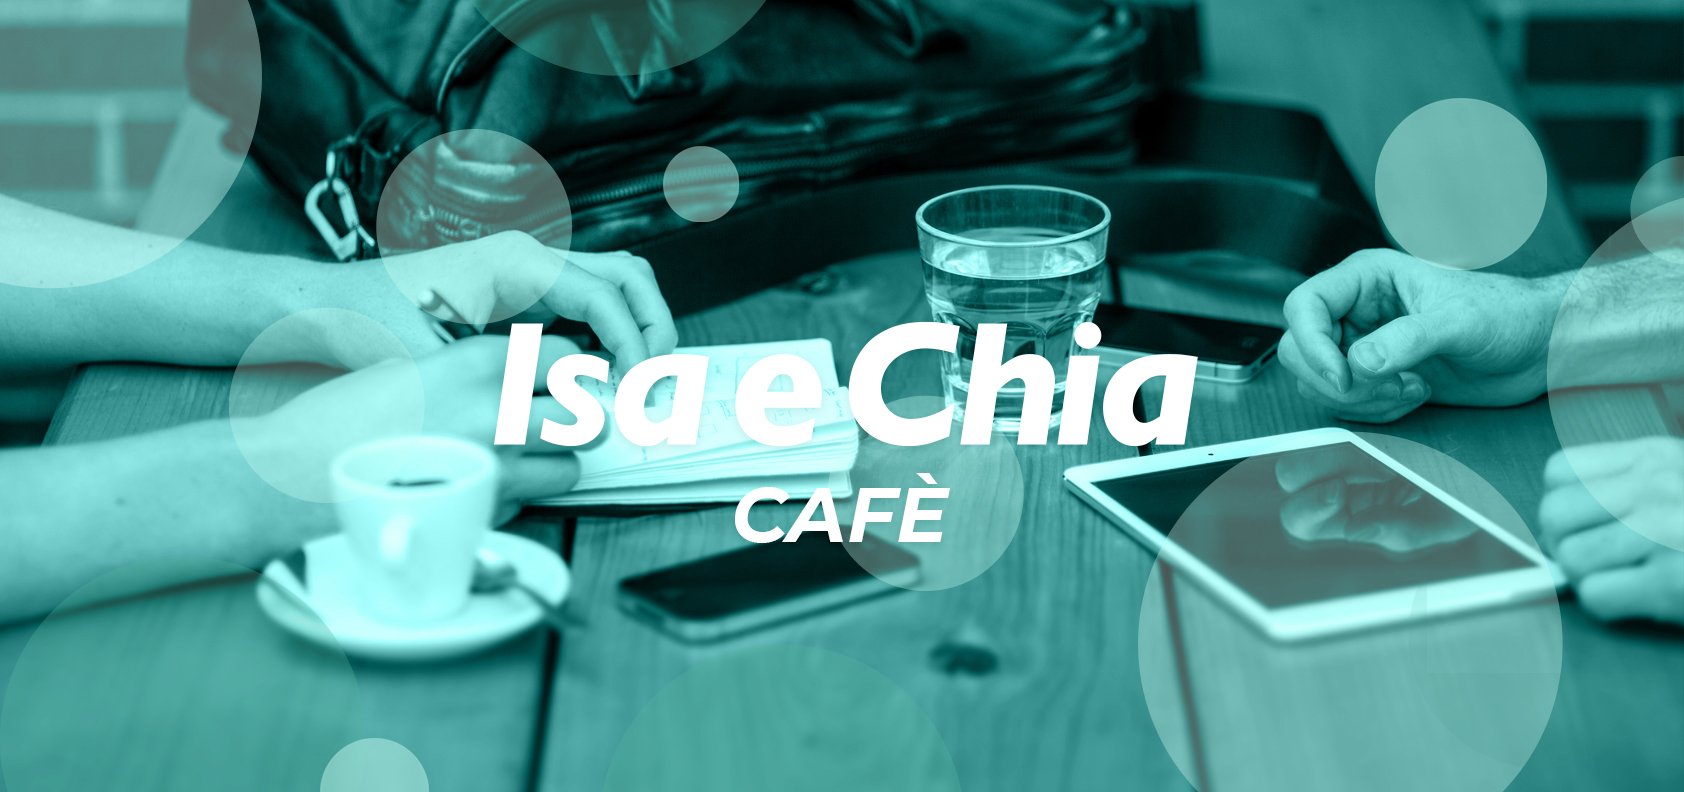 Isa e Chia Cafè, l’angolo delle chiacchiere in libertà (17/05/22)